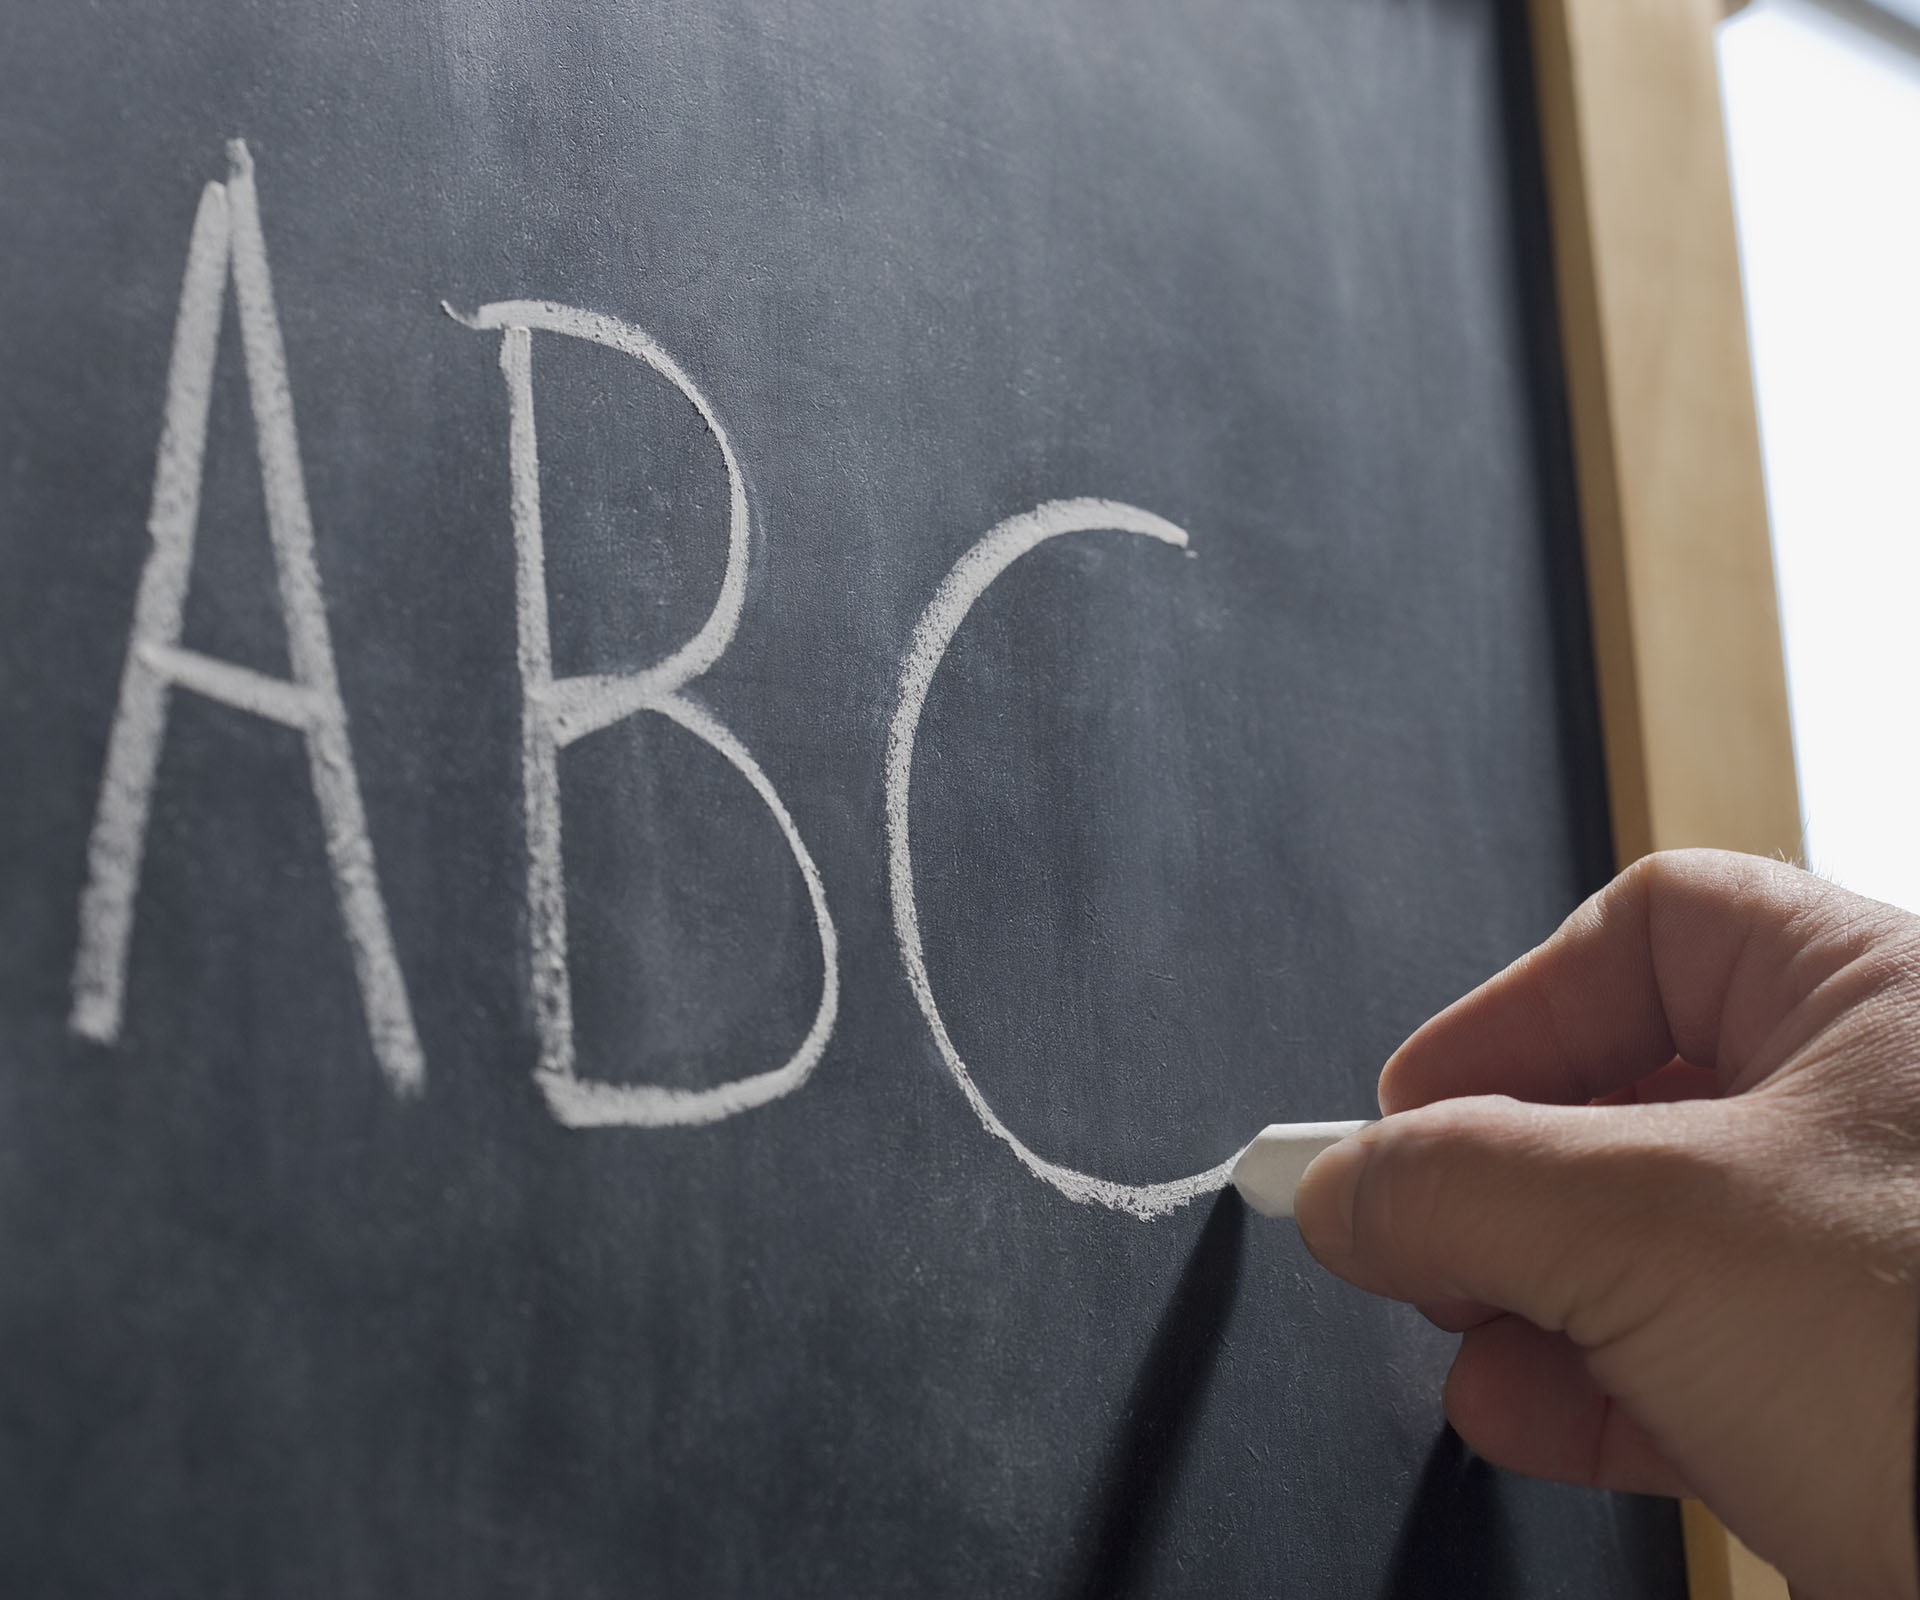 Mistake in school spelling homework goes viral